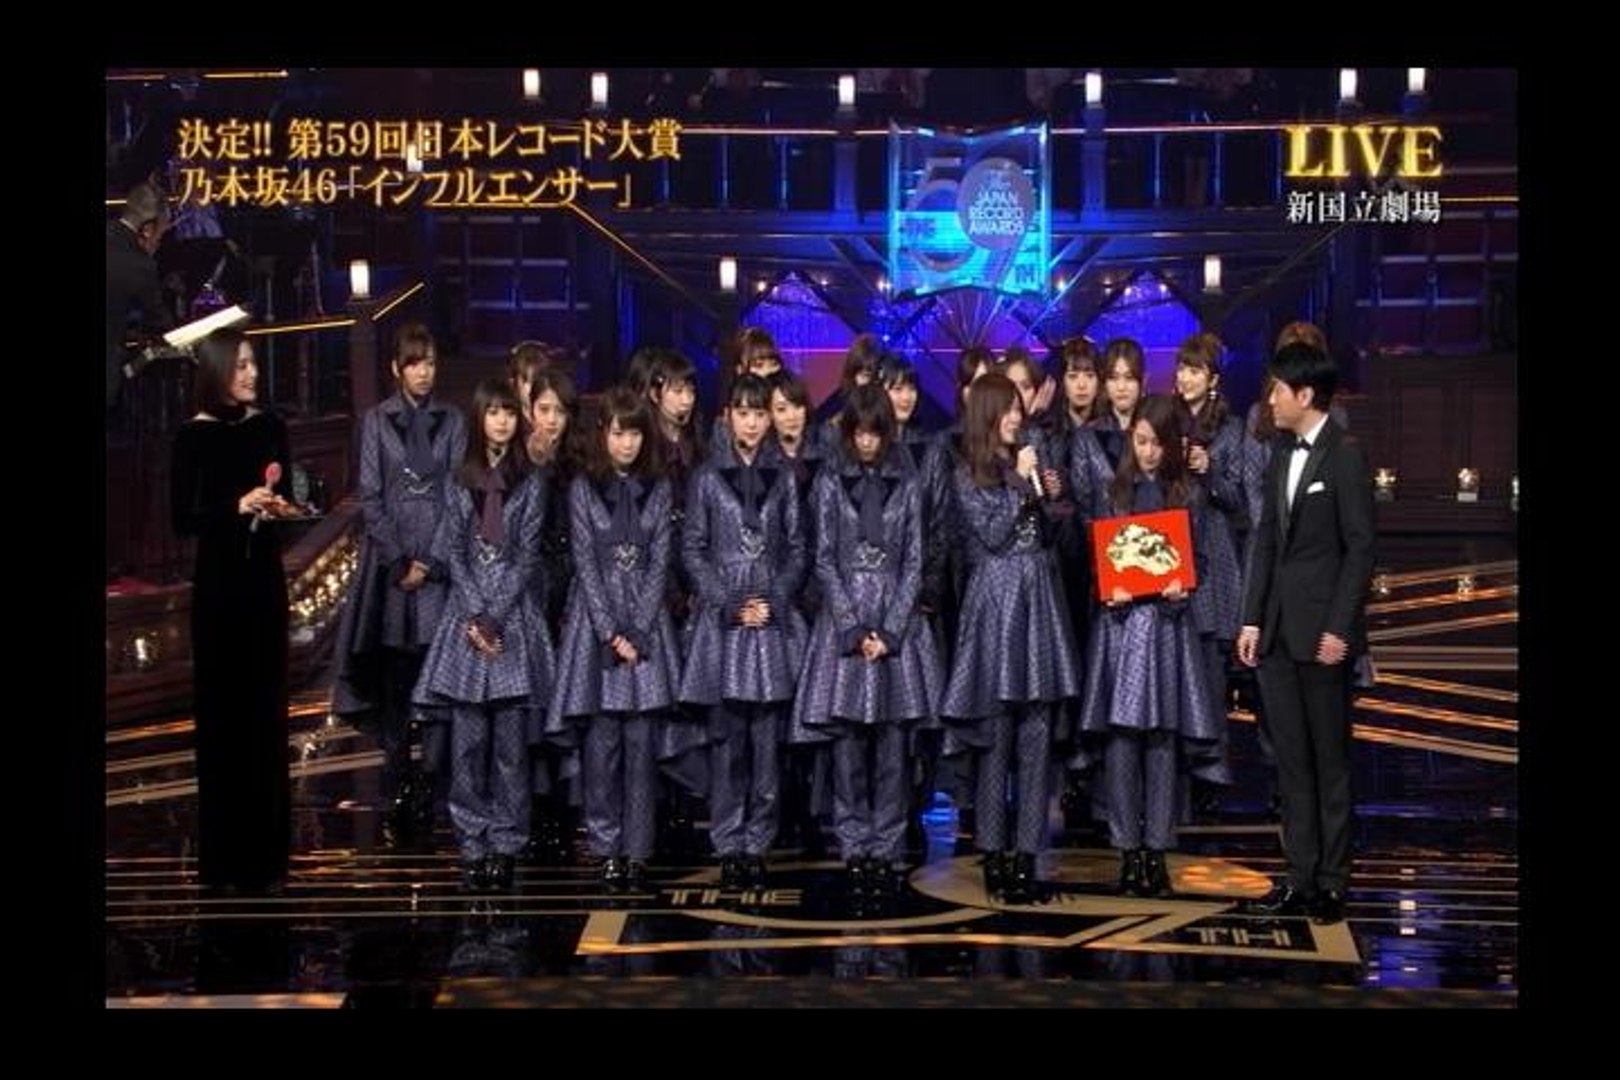 日本レコード大賞 大賞は 乃木坂46 インフルエンサー で初受賞 動画 Dailymotion